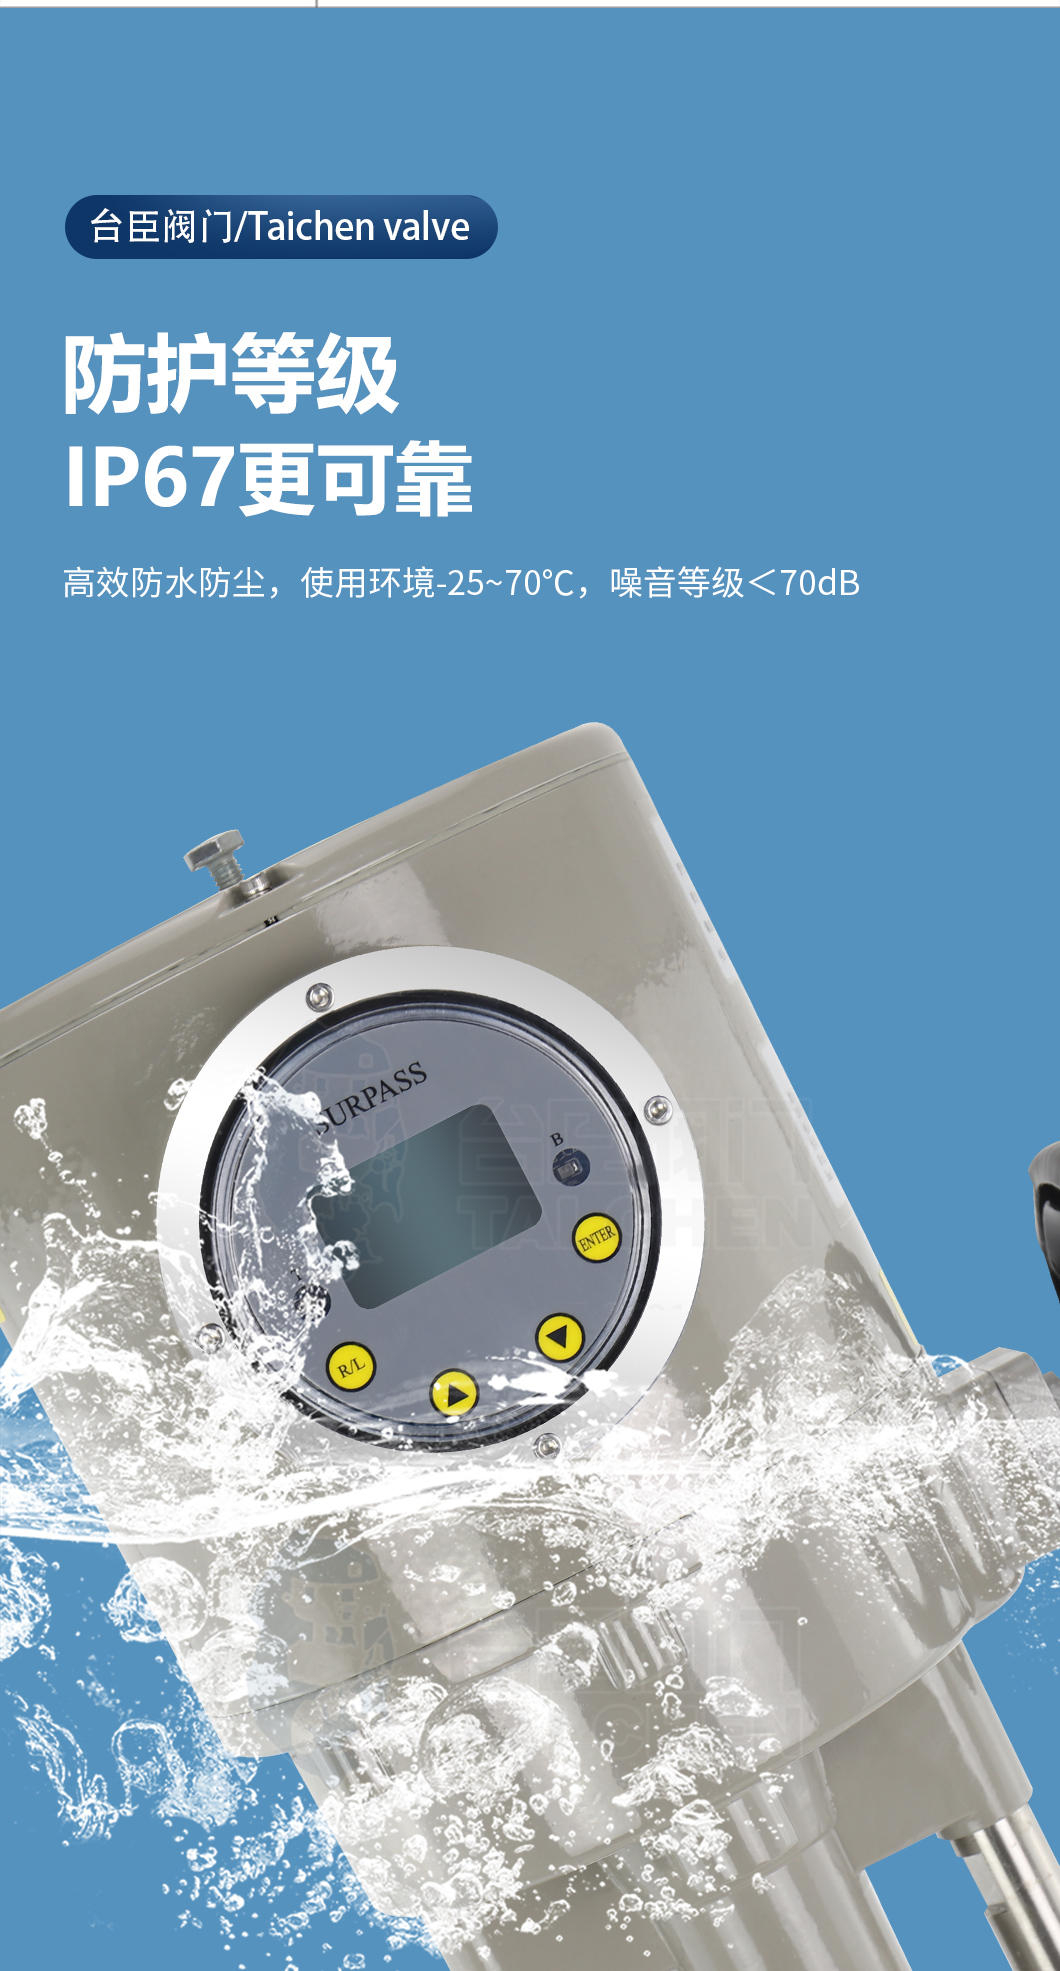 智能型電動執行器防護等級可達到IP67